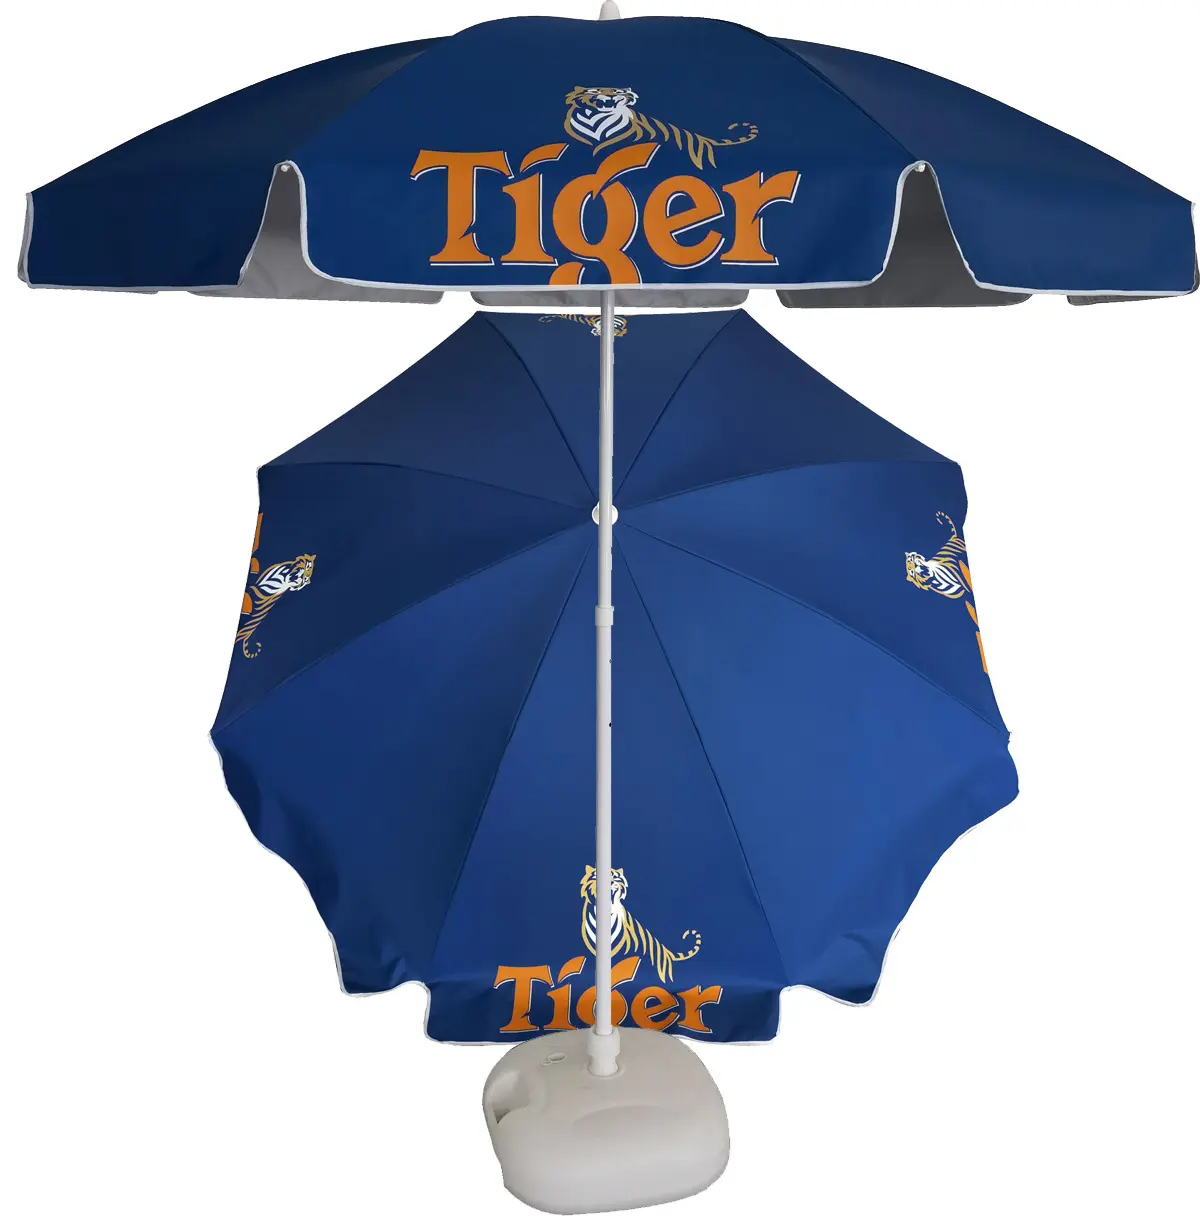 Tiger Bier Outdoor Strand Paraplu Voor Zuidoost-azi Ë